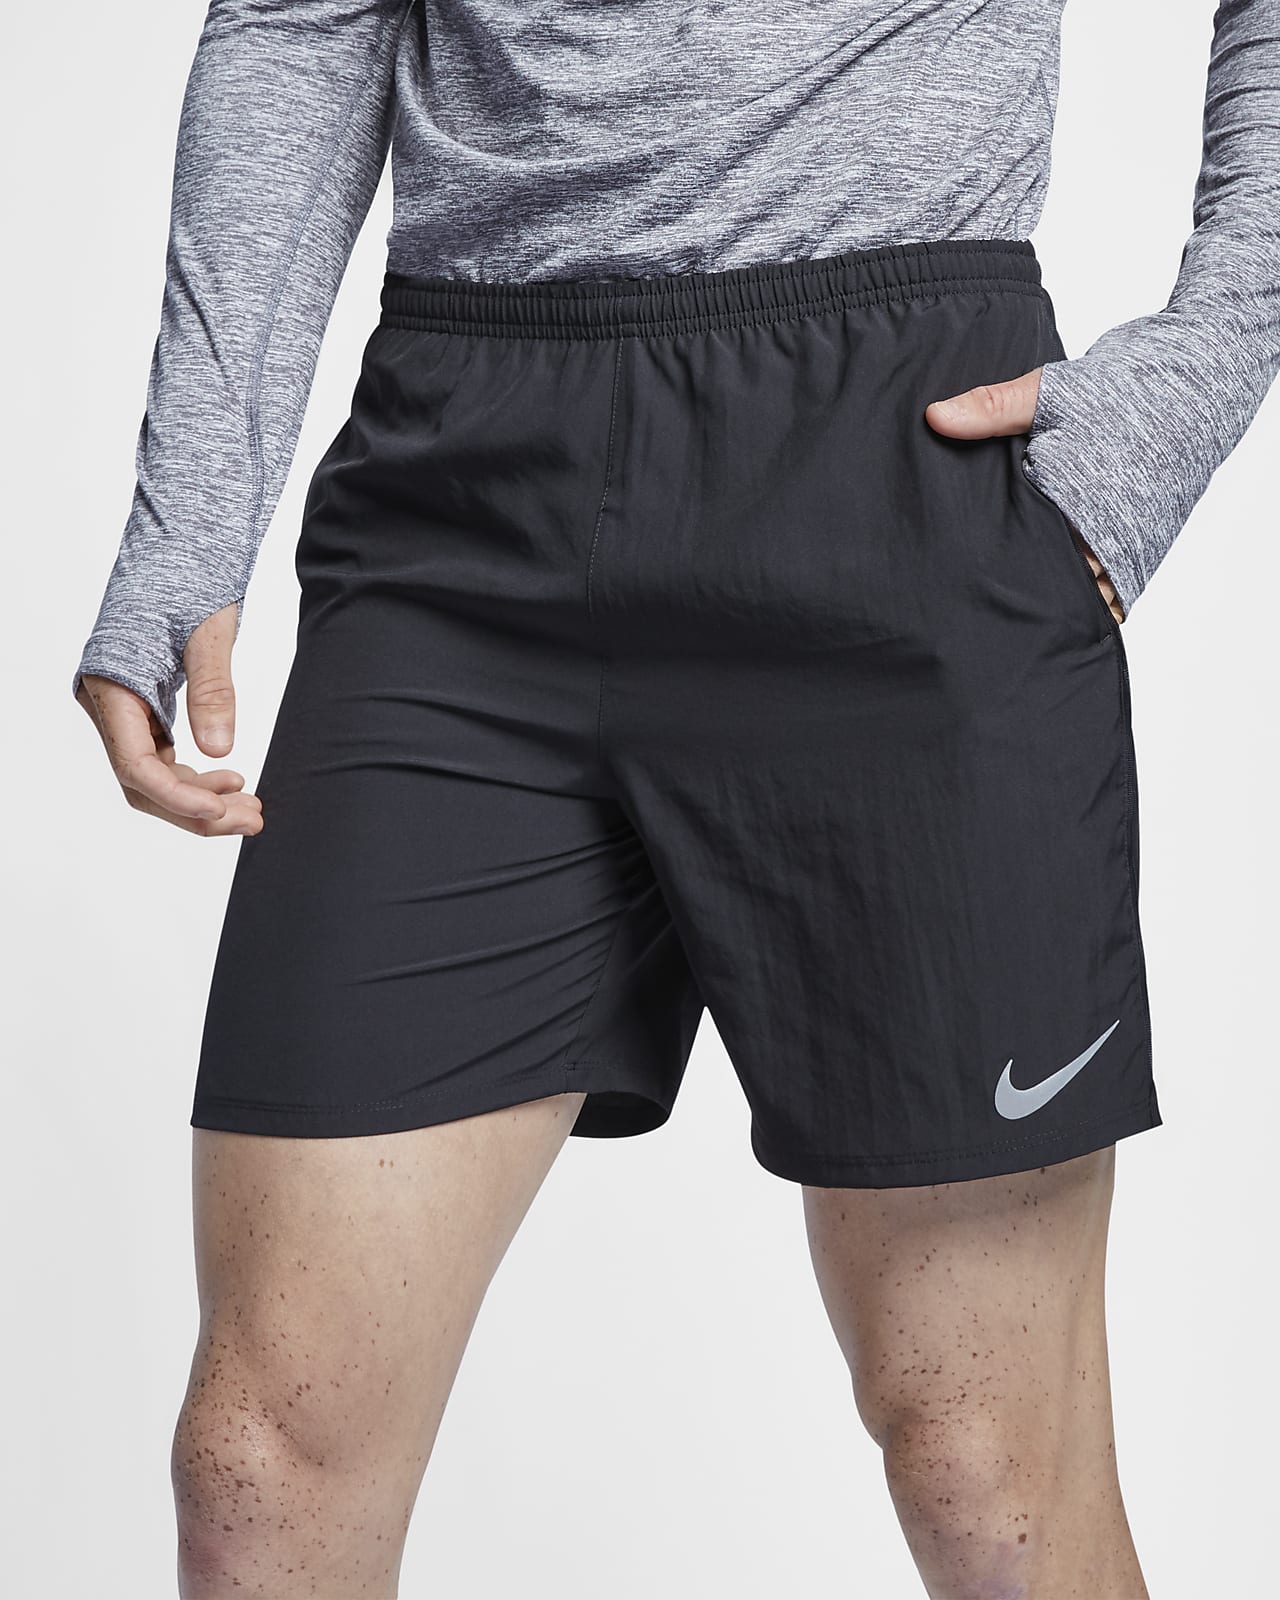 Nike Men's Running Shorts. Nike LU